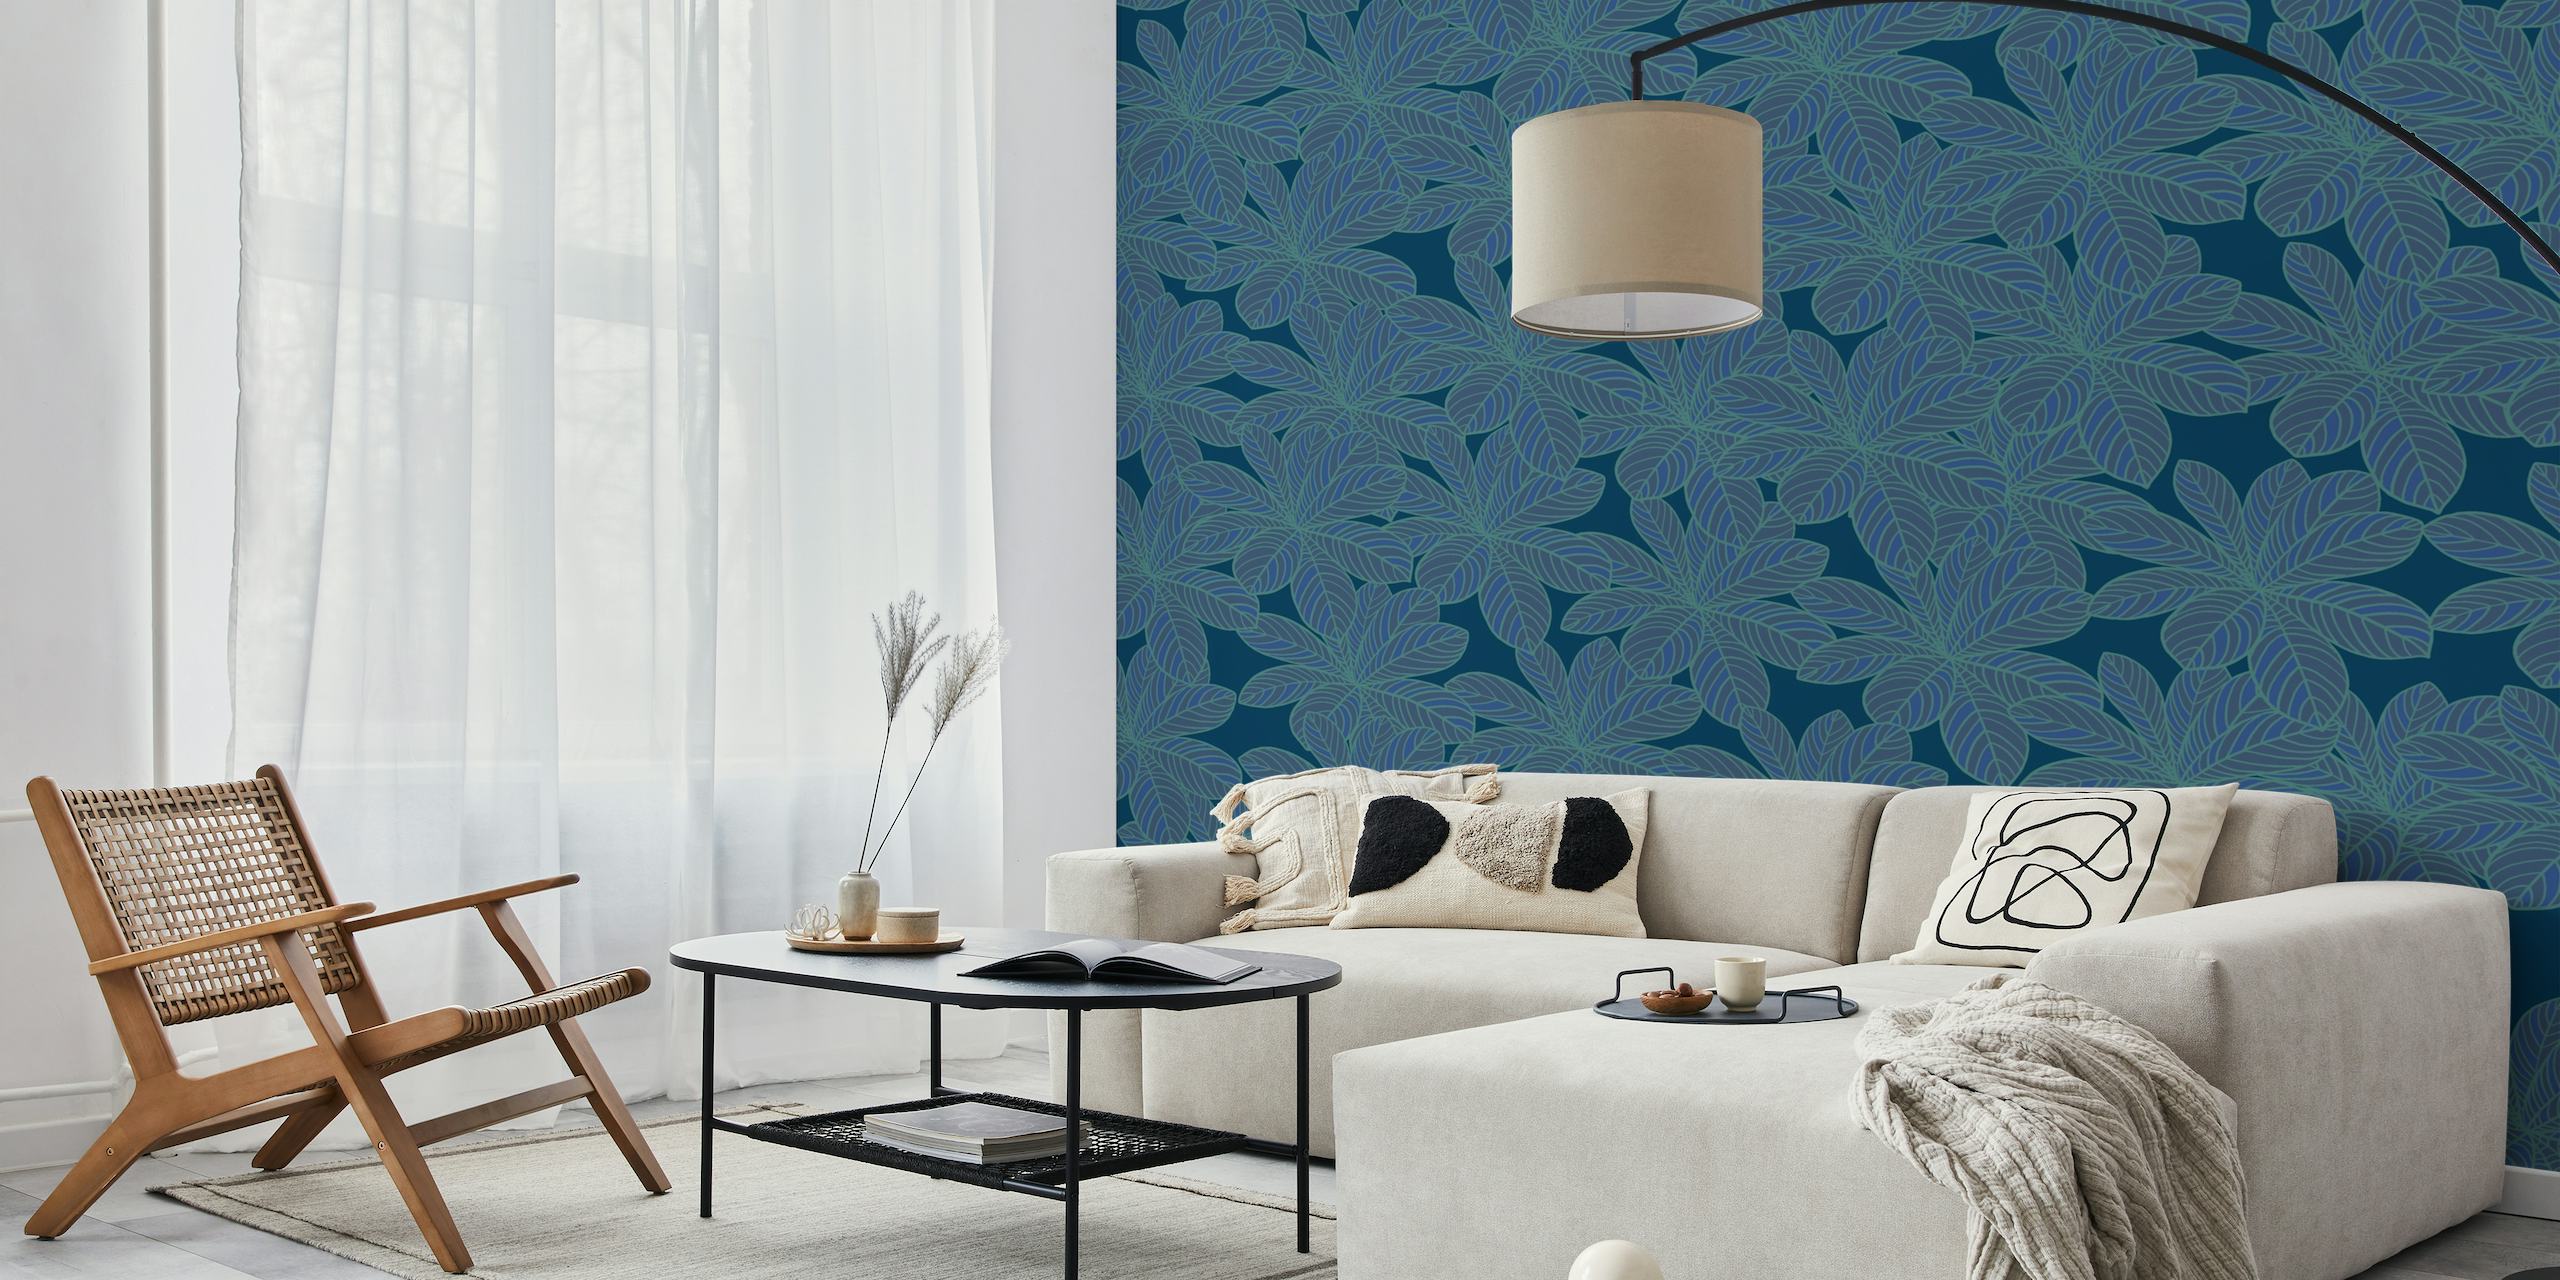 Fotomural con estampado de hojas azules para decoración de interiores